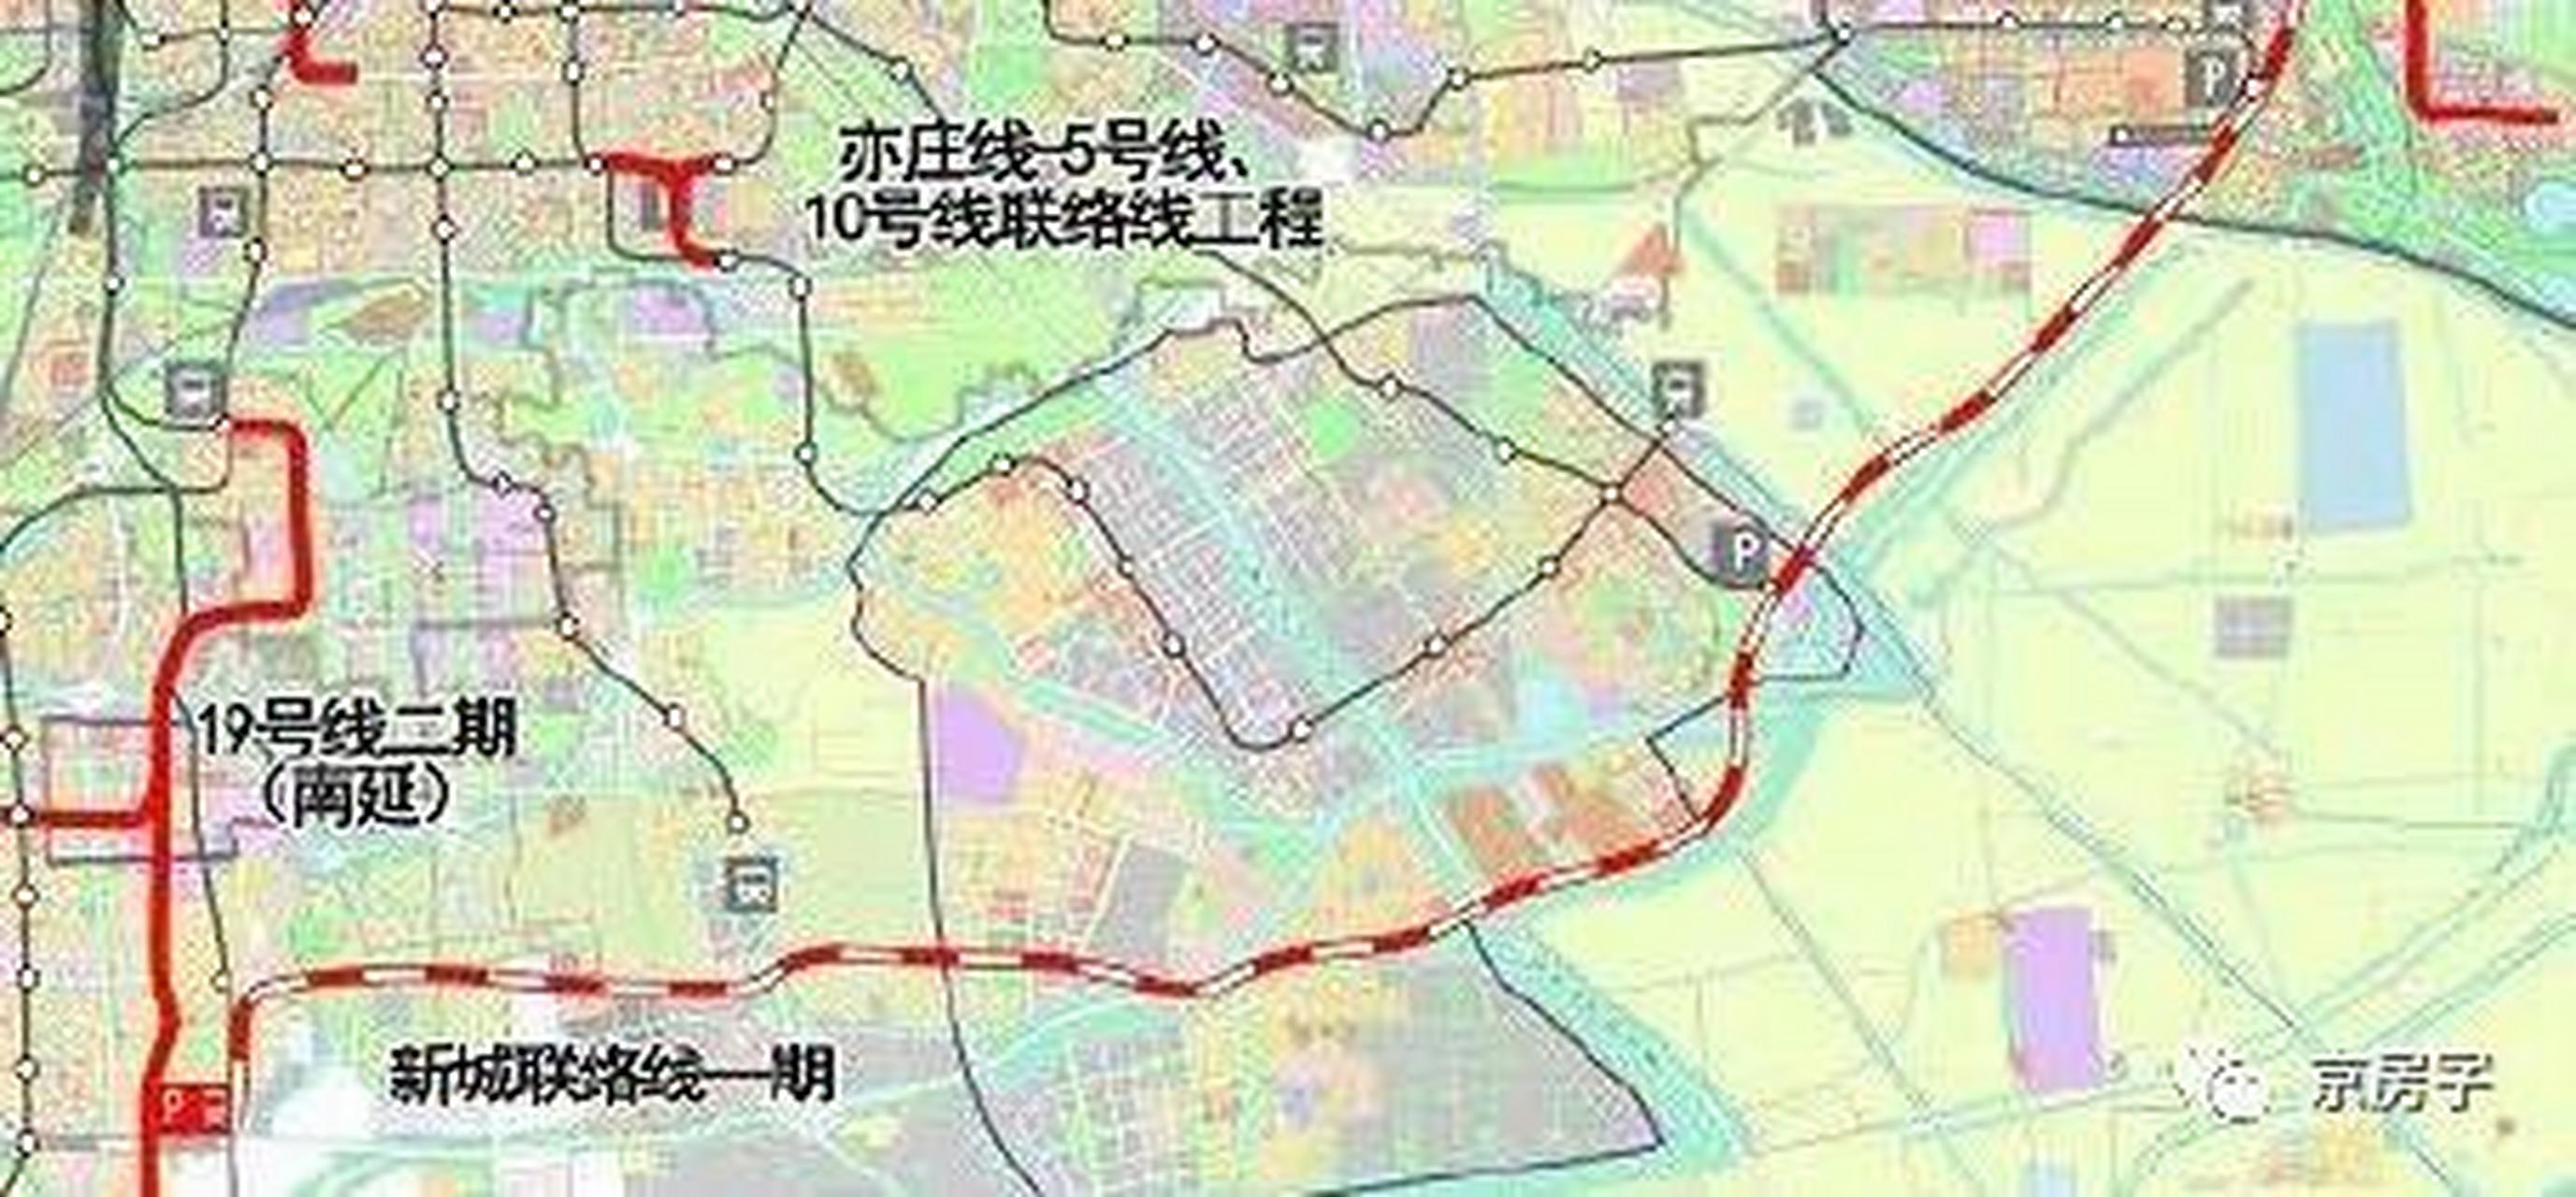 北京s6轨道交通线路环评公示,终于要开工了